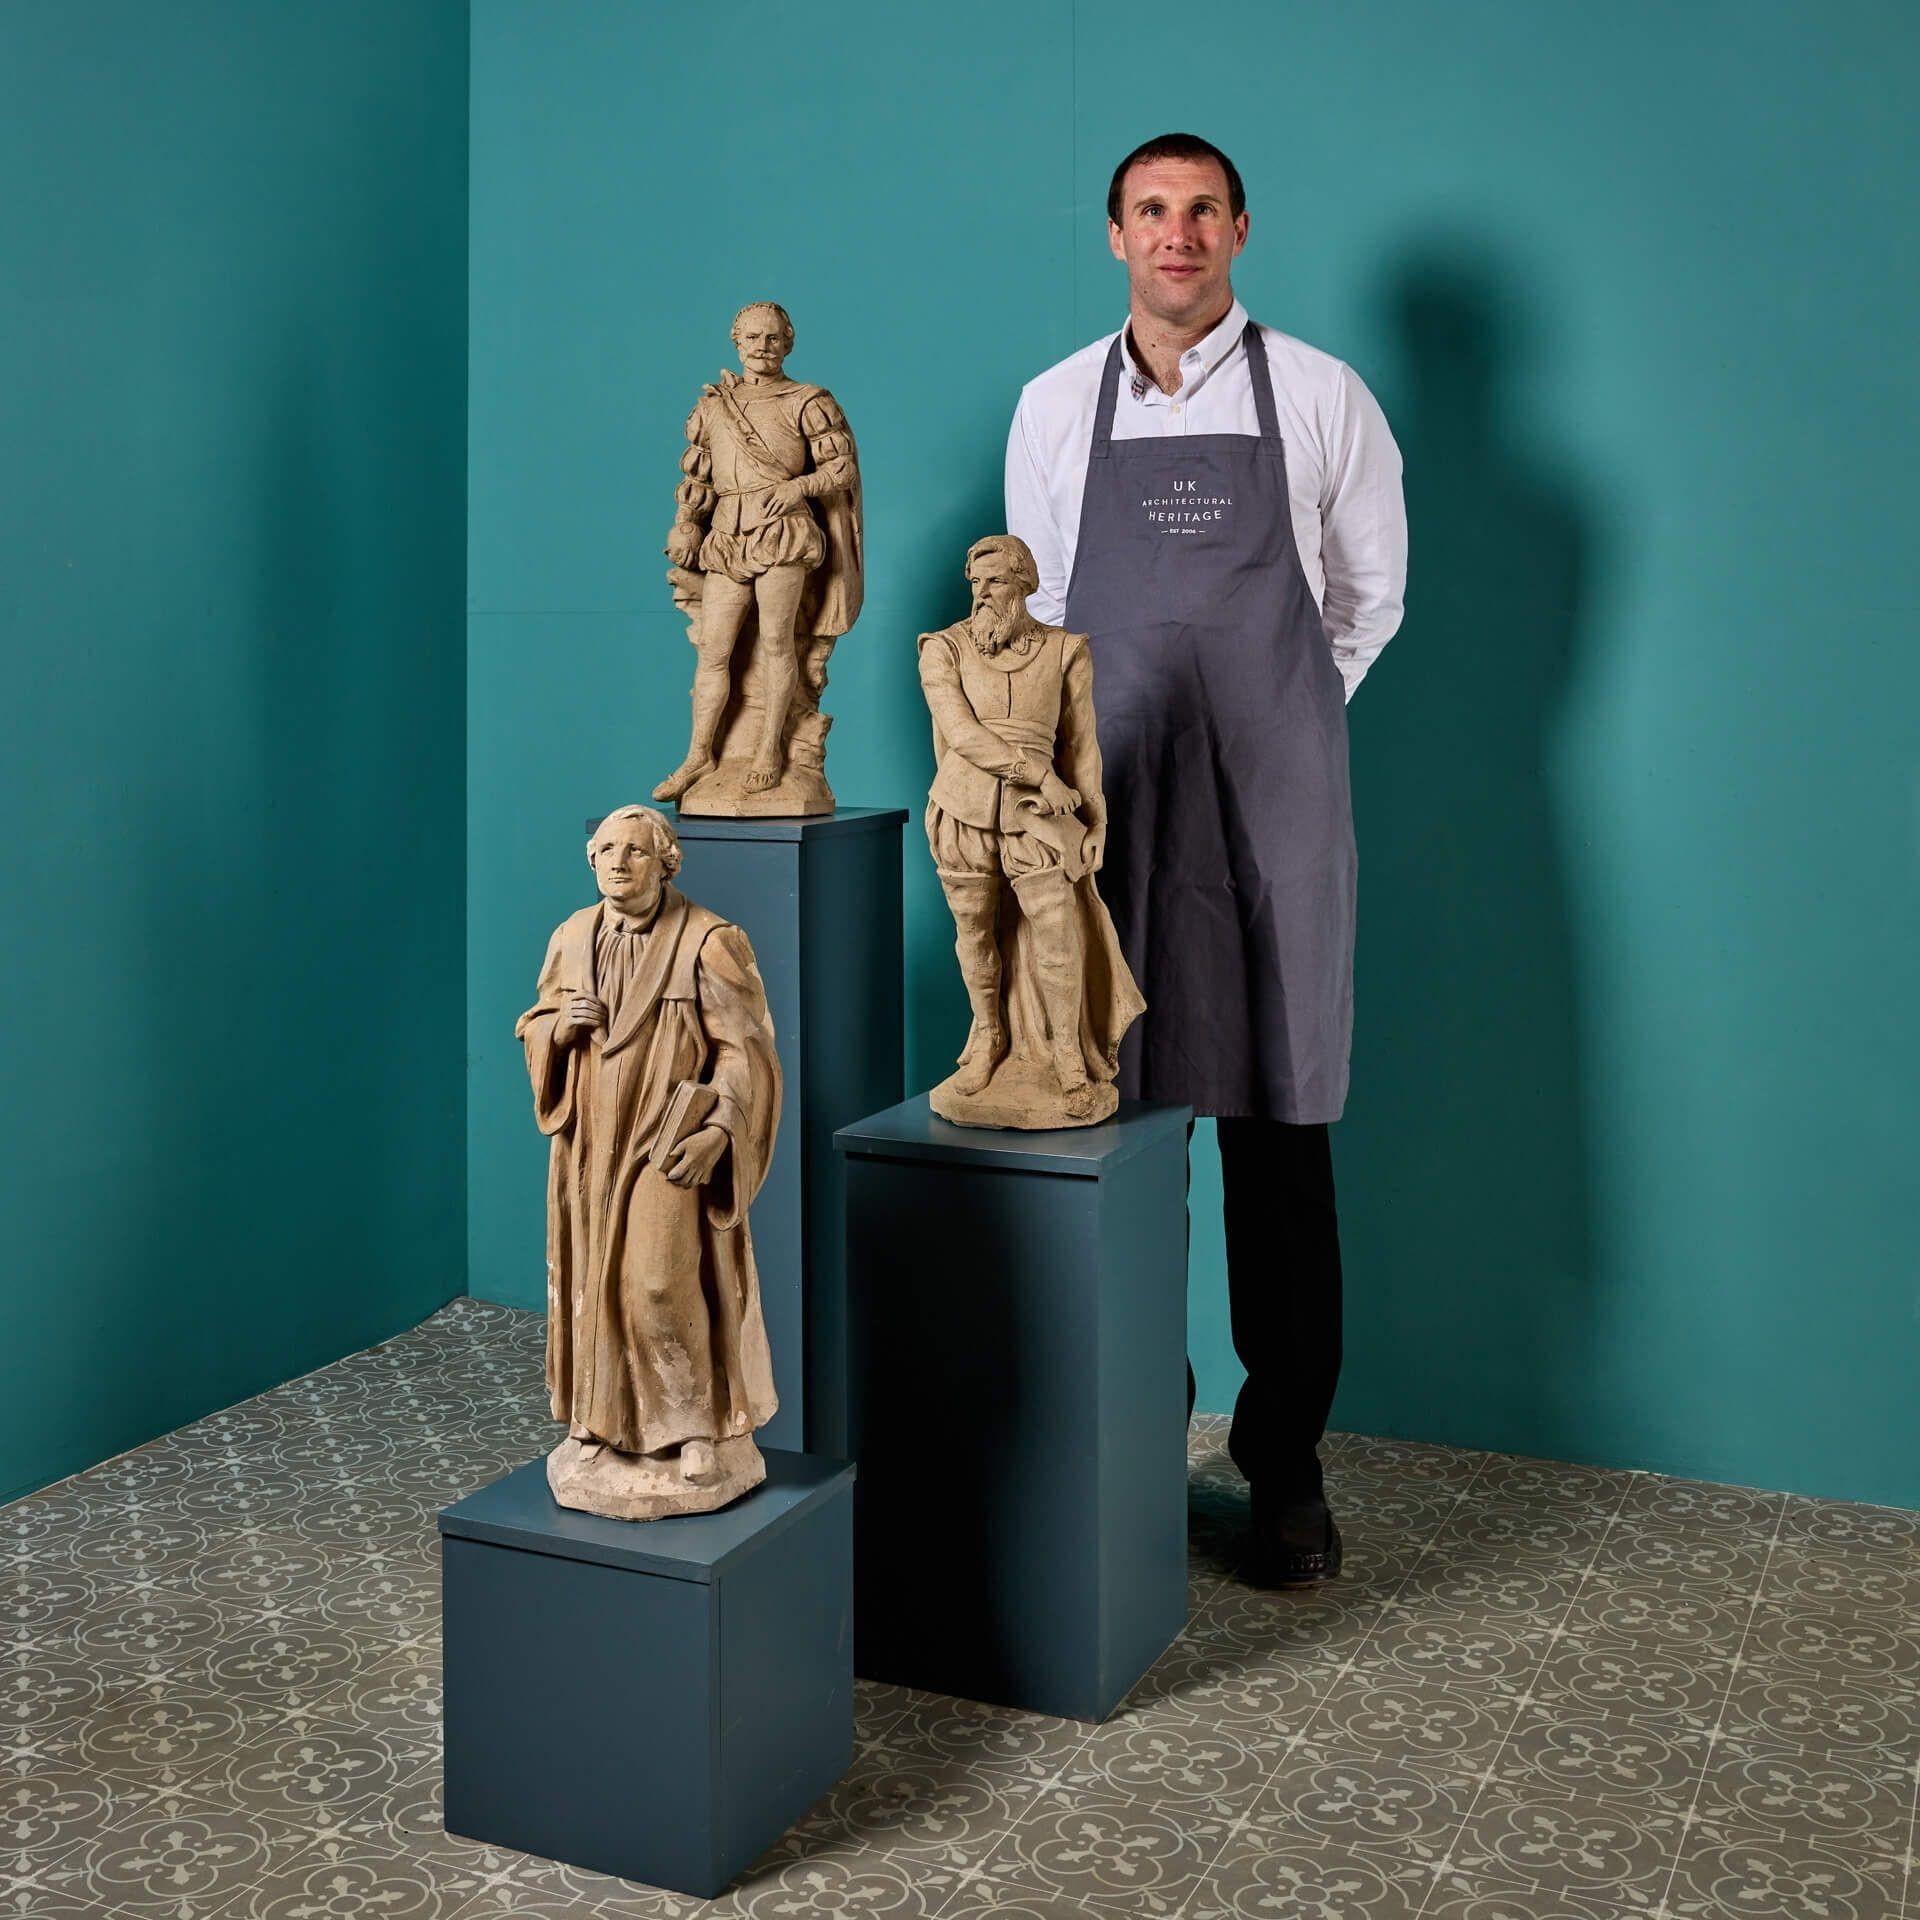 Ein Satz von 3 antiken Terrakotta-Statuen, die berühmte historische englische Persönlichkeiten darstellen, möglicherweise von Blanchard. Die Sammlung umfasst Statuen von Francis Drake, dem Entdecker des 16. Jahrhunderts, John Wesley, dem Gründer der